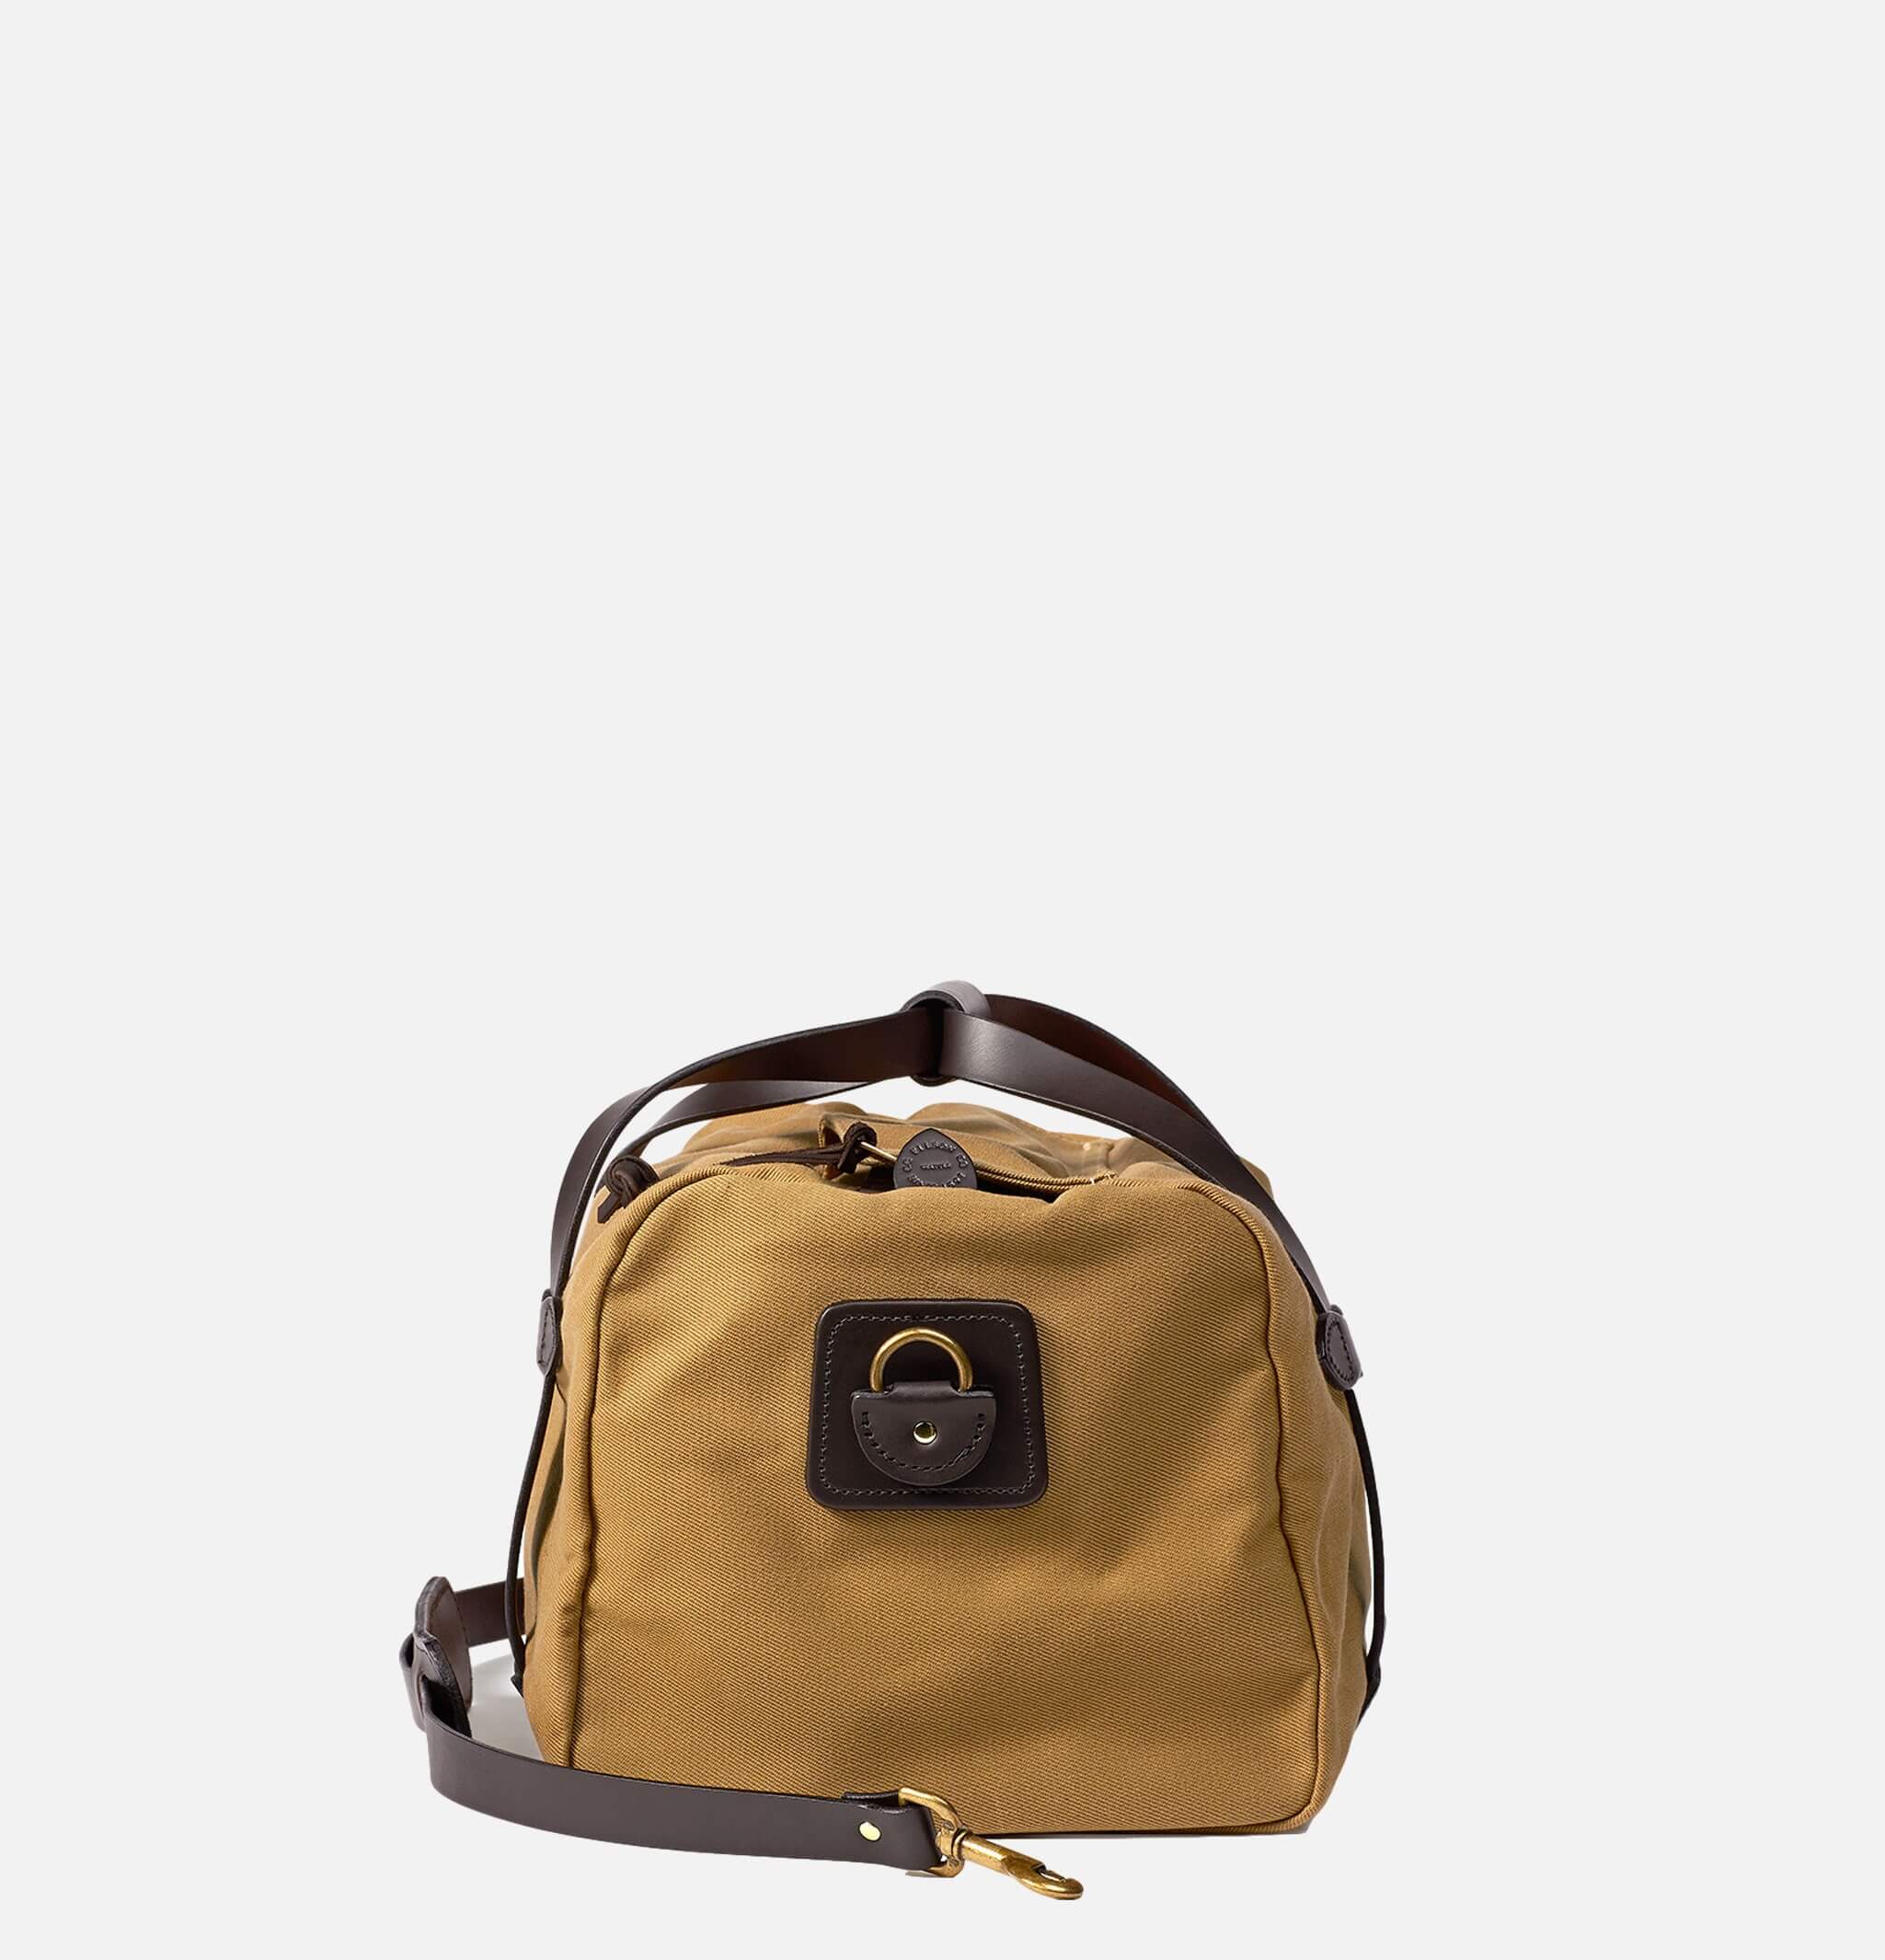 70220 - Small Duffle Bag Tan